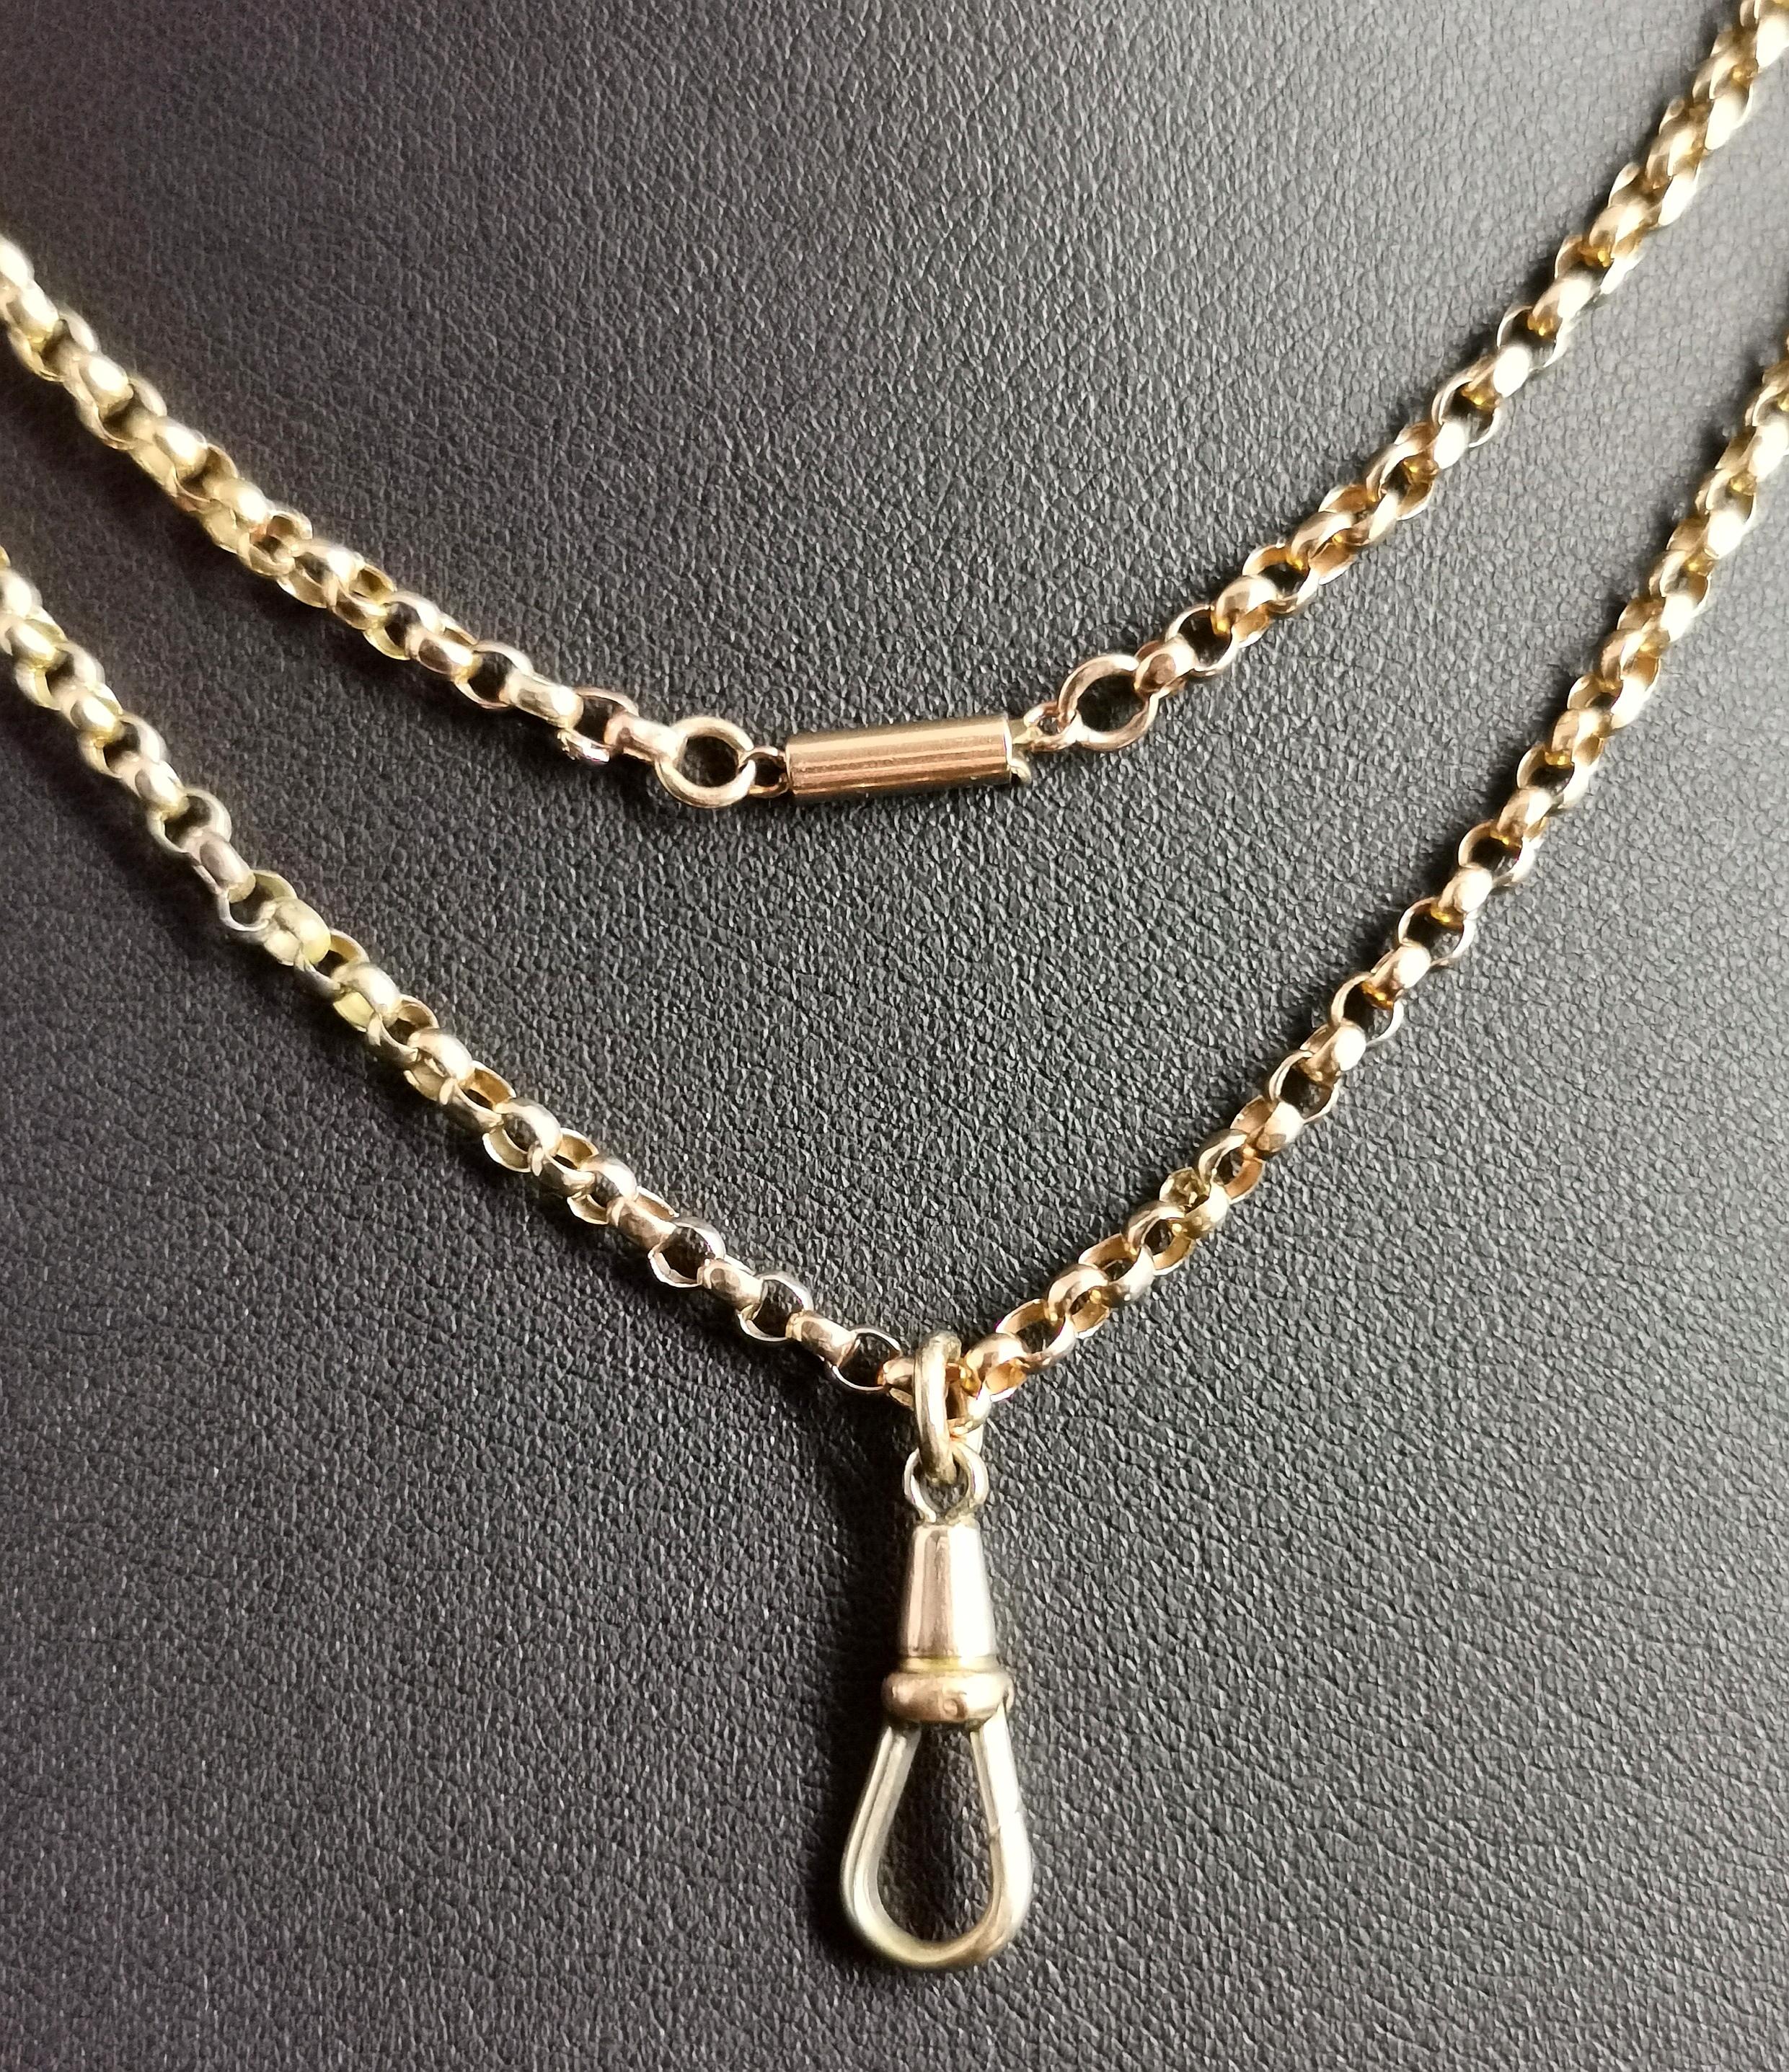 Antique Victorian 9 Karat Yellow Gold Belcher Link Chain Necklace, Dog Clip 5